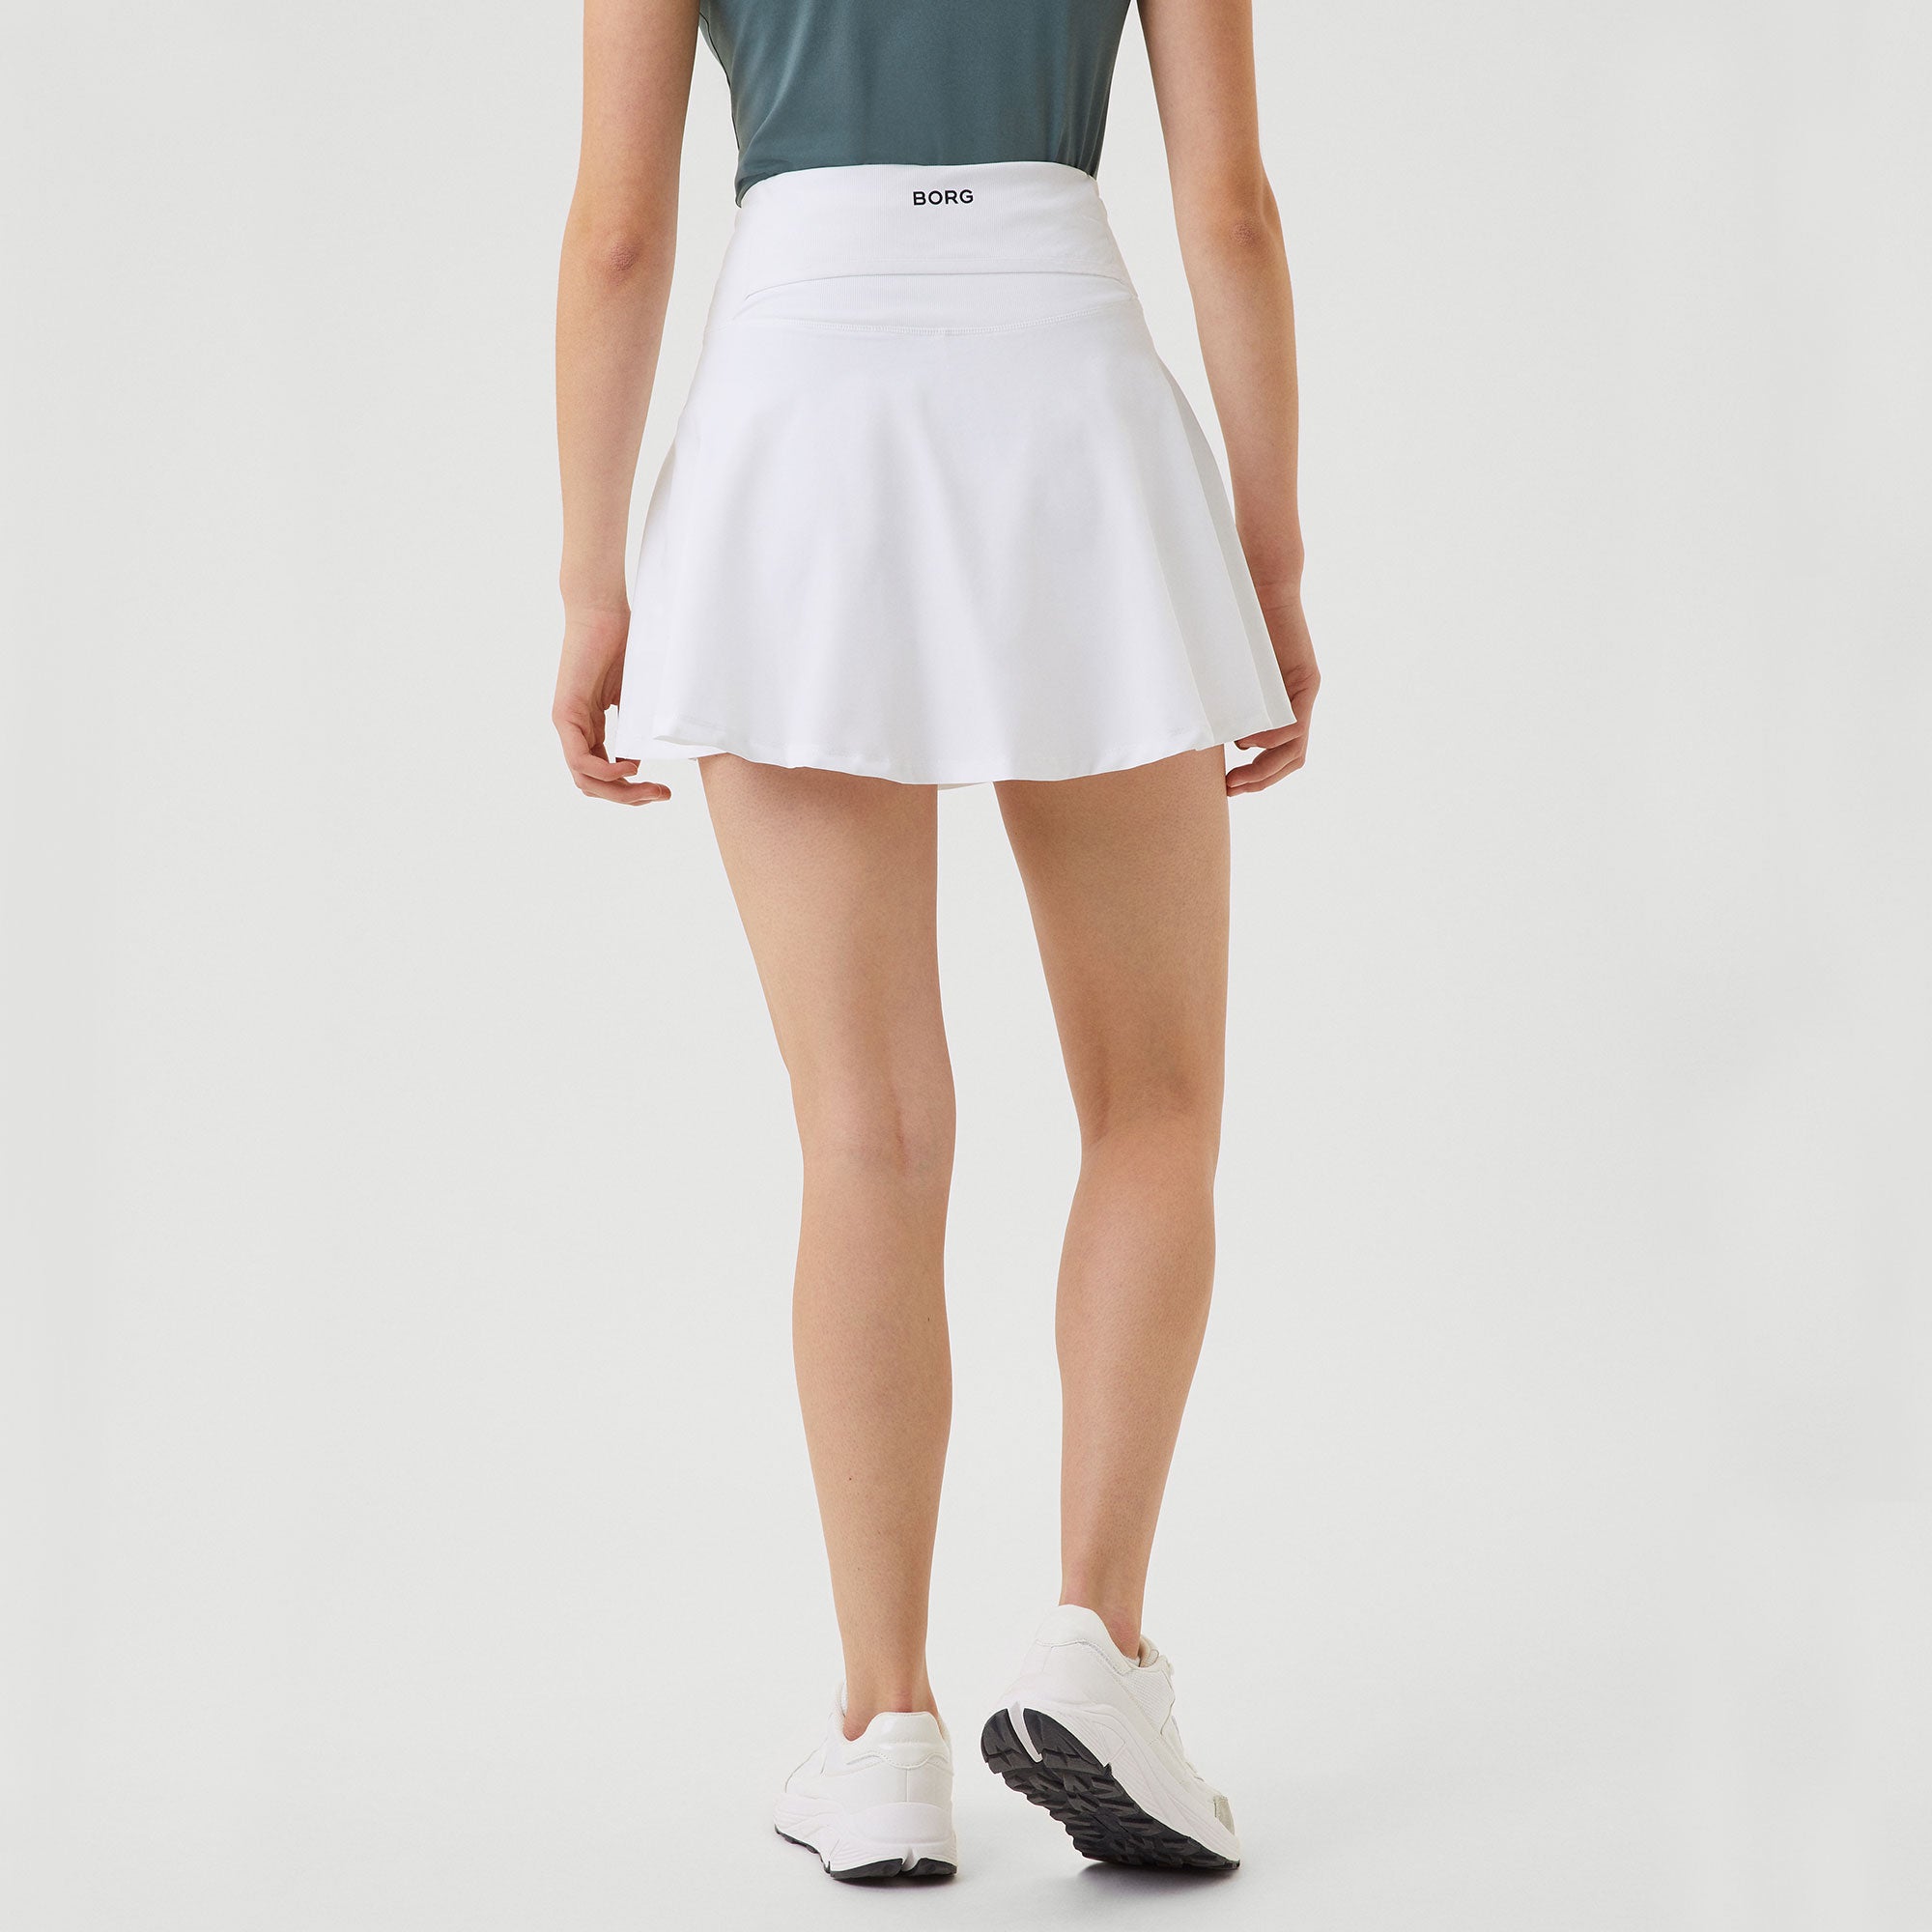 Björn Borg Ace Women's Pocket Tennis Skirt - White (2)